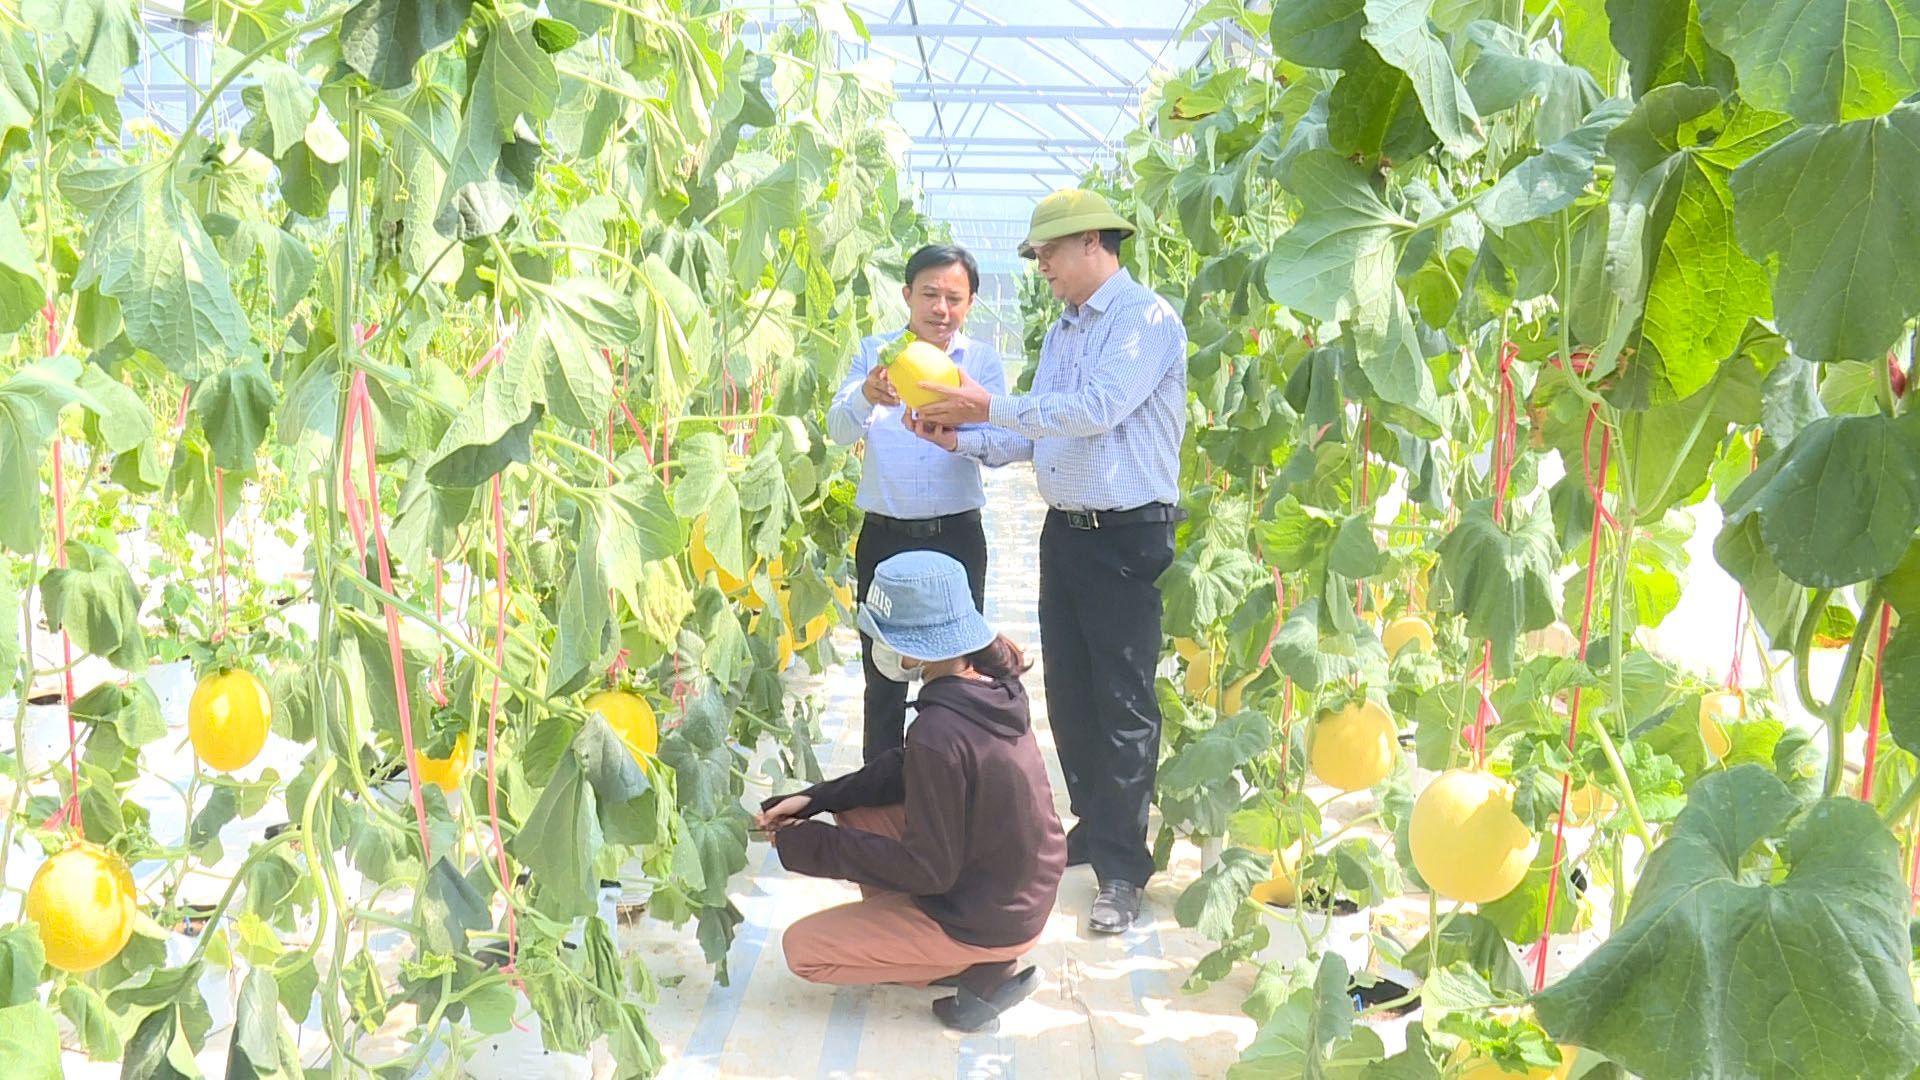 Mô hình trồng dưa lưới, dưa leo theo tiêu chuẩn VietGAP trong nhà màng được nhiều hộ nông dân Quảng Trạch áp dụng.